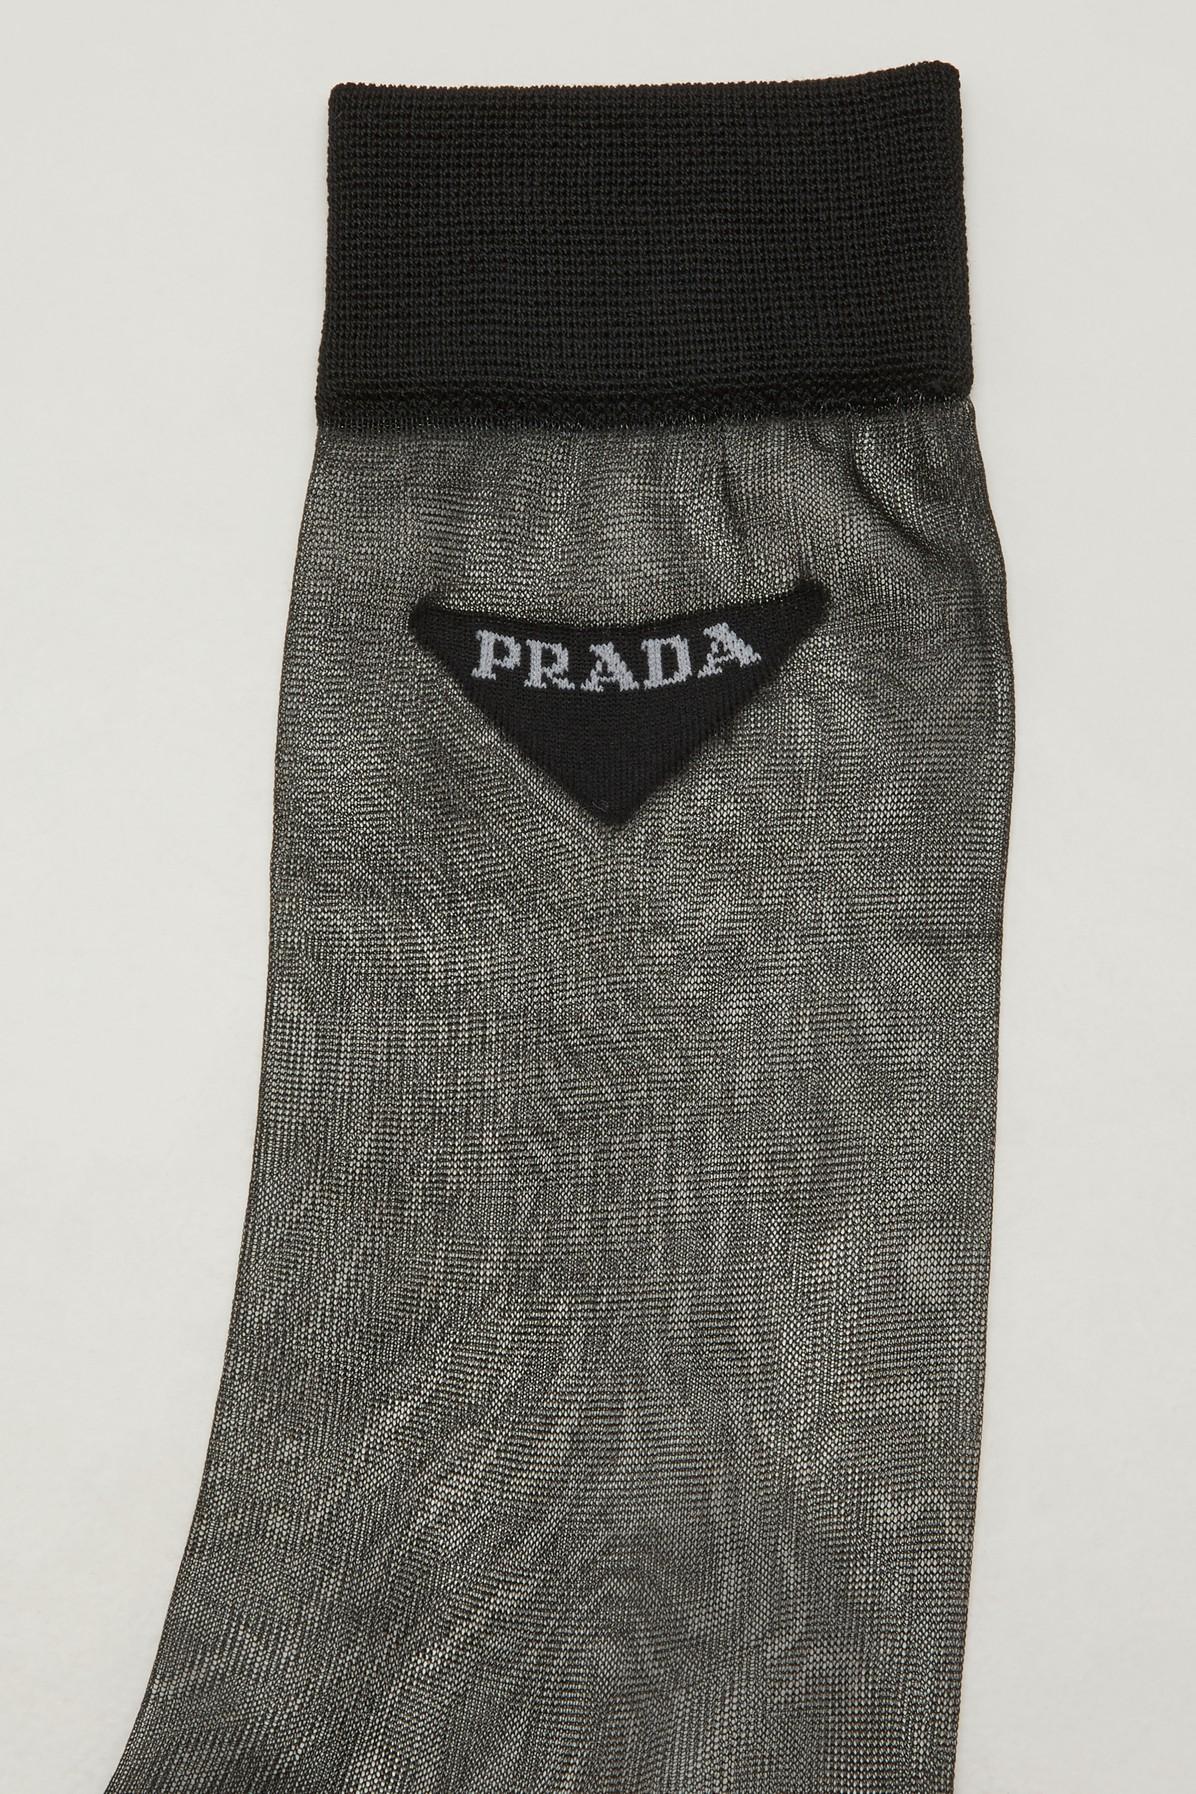 Prada Synthetic Nylon Socks in Black | Lyst